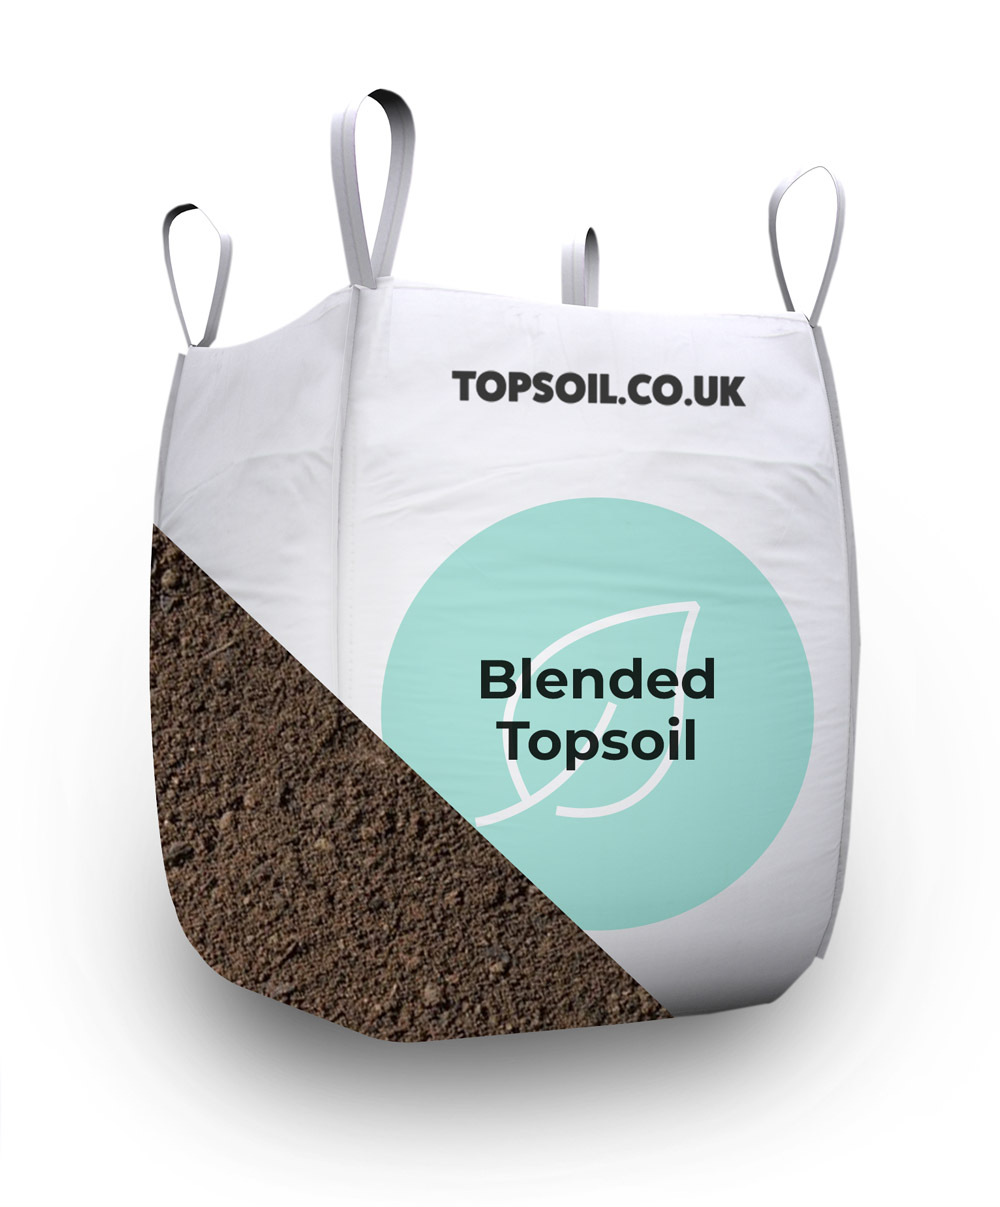 Blended topsoil